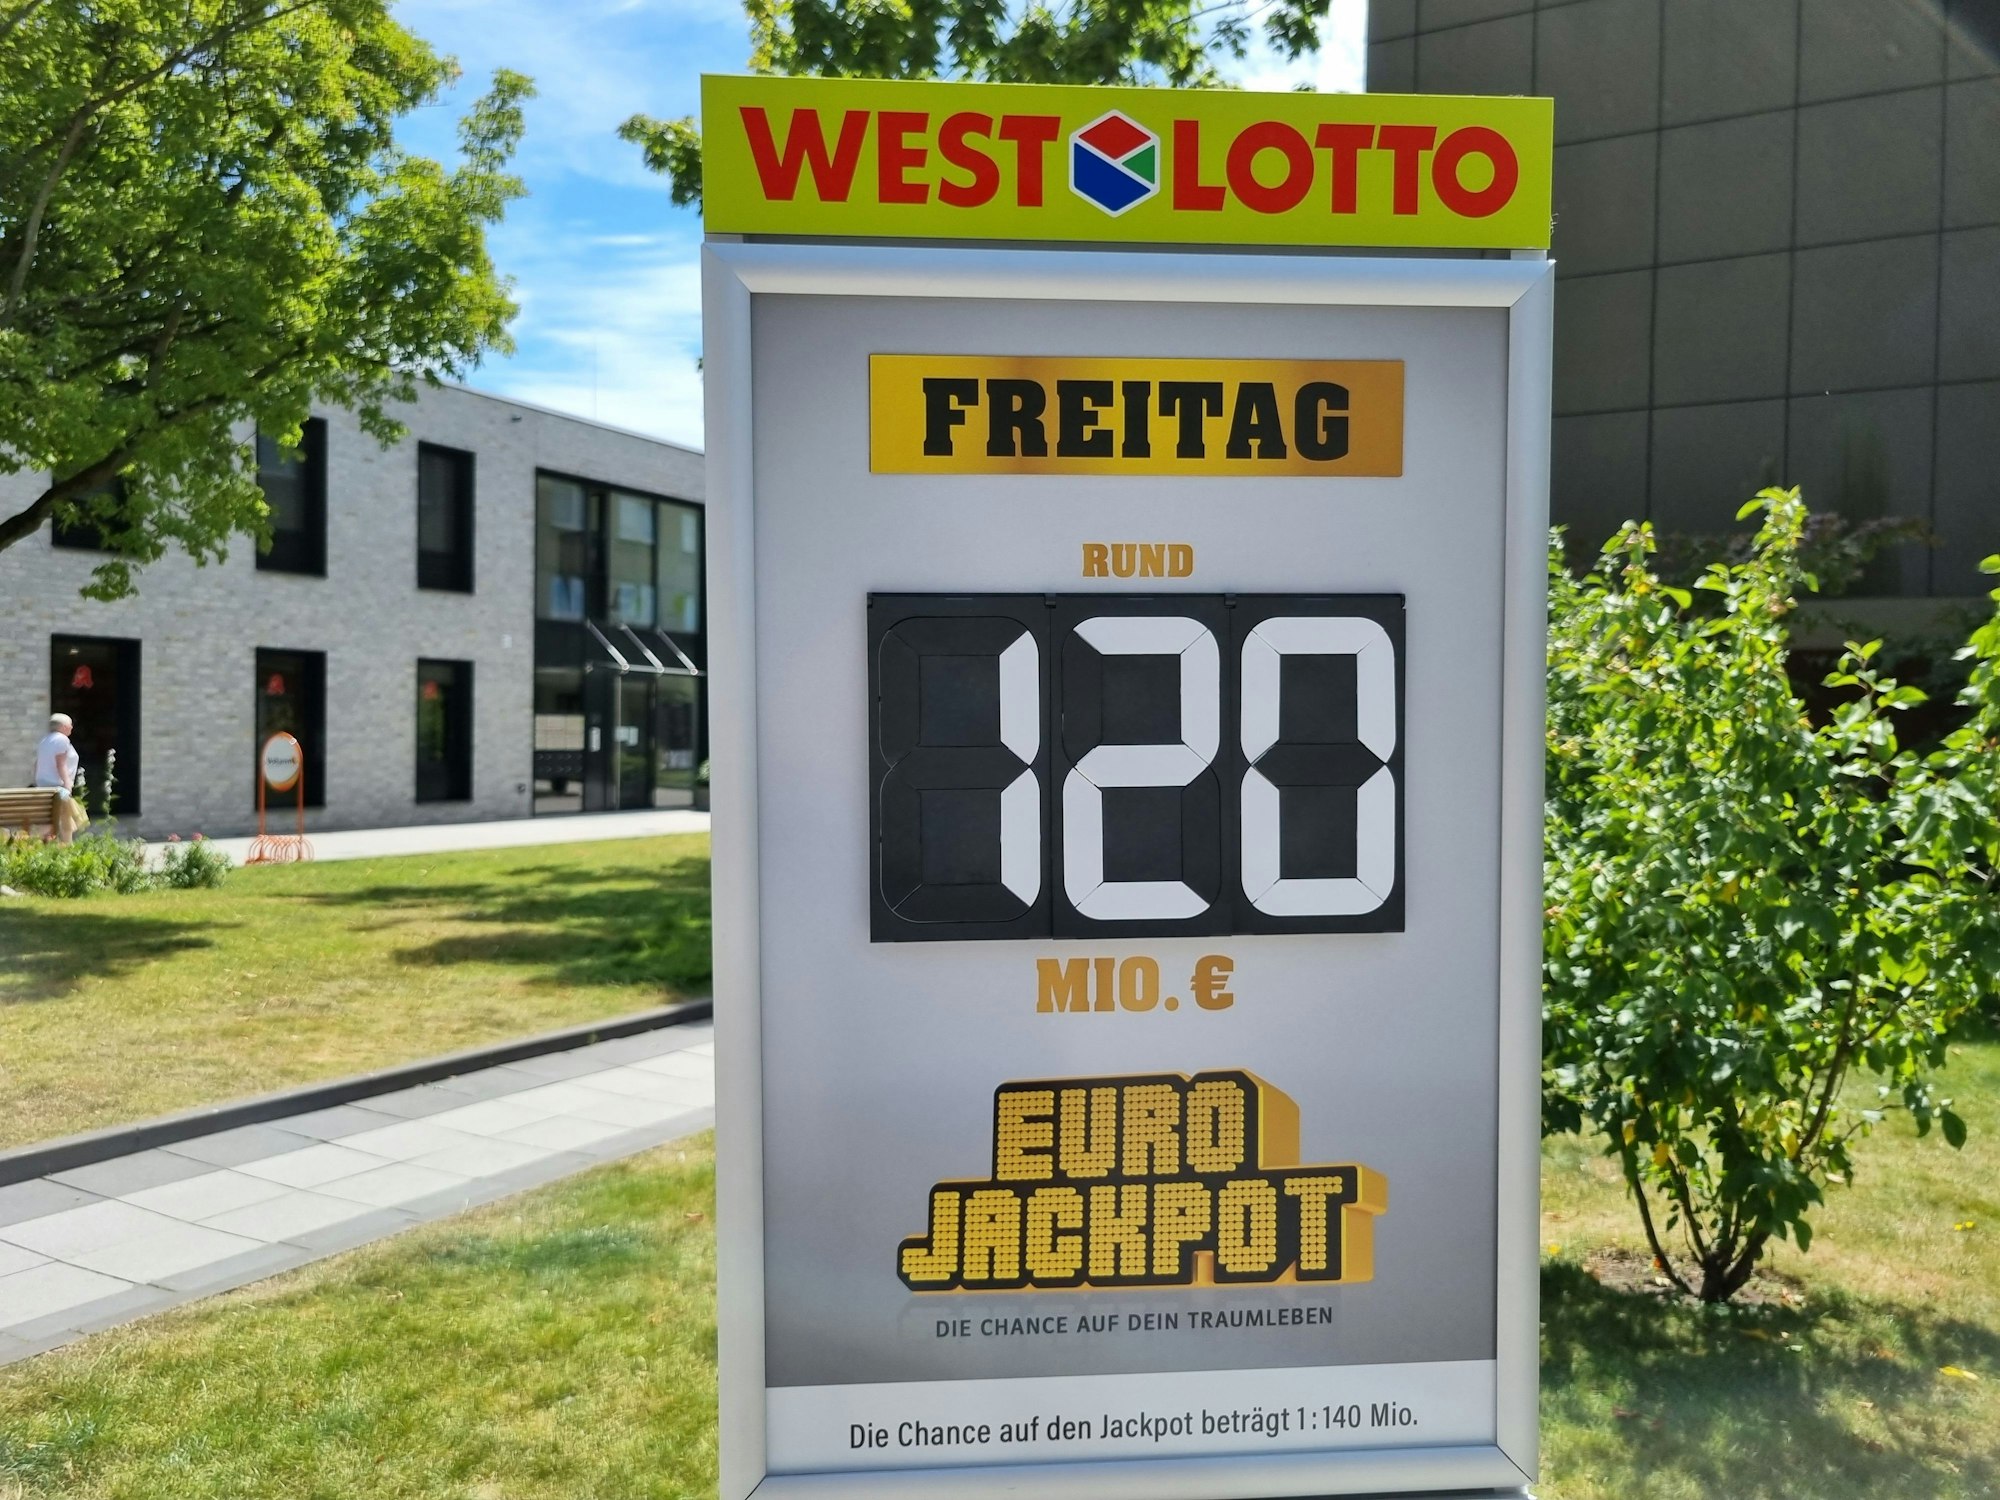 Am kommenden Freitag (23. Juni) warten erneut 120 Millionen Euro im Jackpot. Durch den Überlauf in den zweiten Rang gibt es dort einen weiteren Jackpot von 22 Millionen Euro.